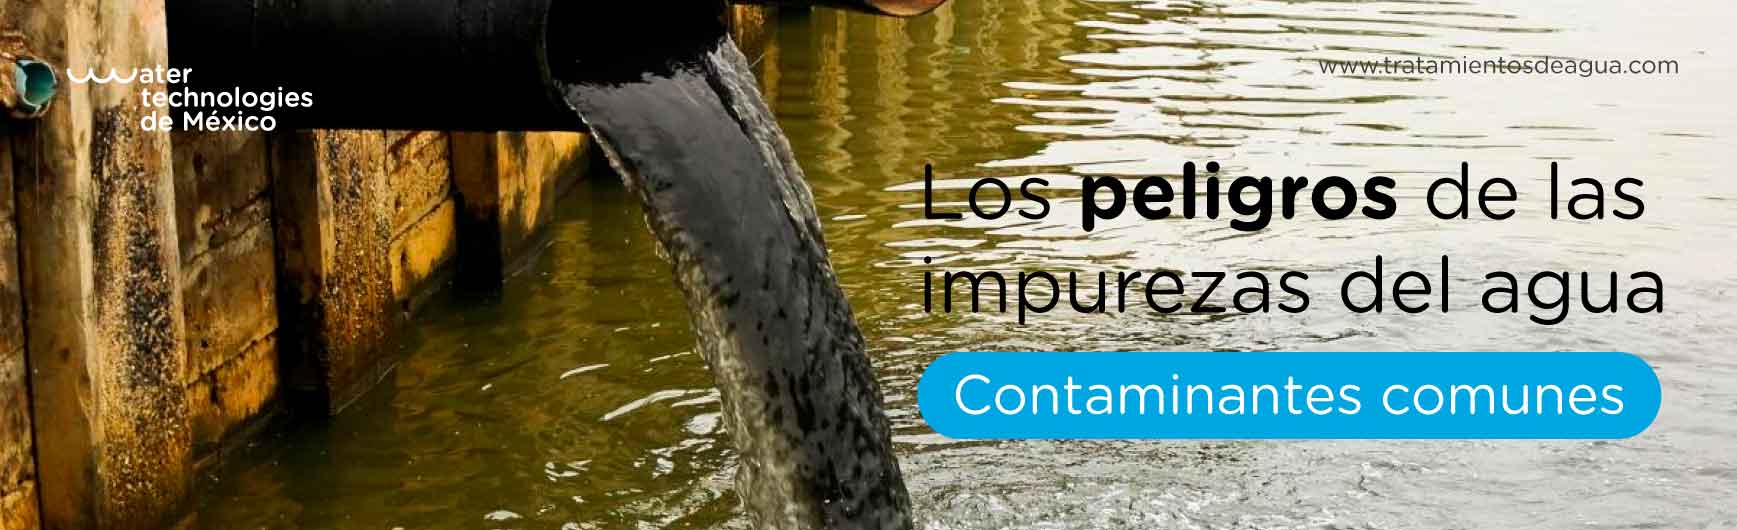 Los peligros de las impurezas del agua: contaminantes comunes y cómo eliminarlos.